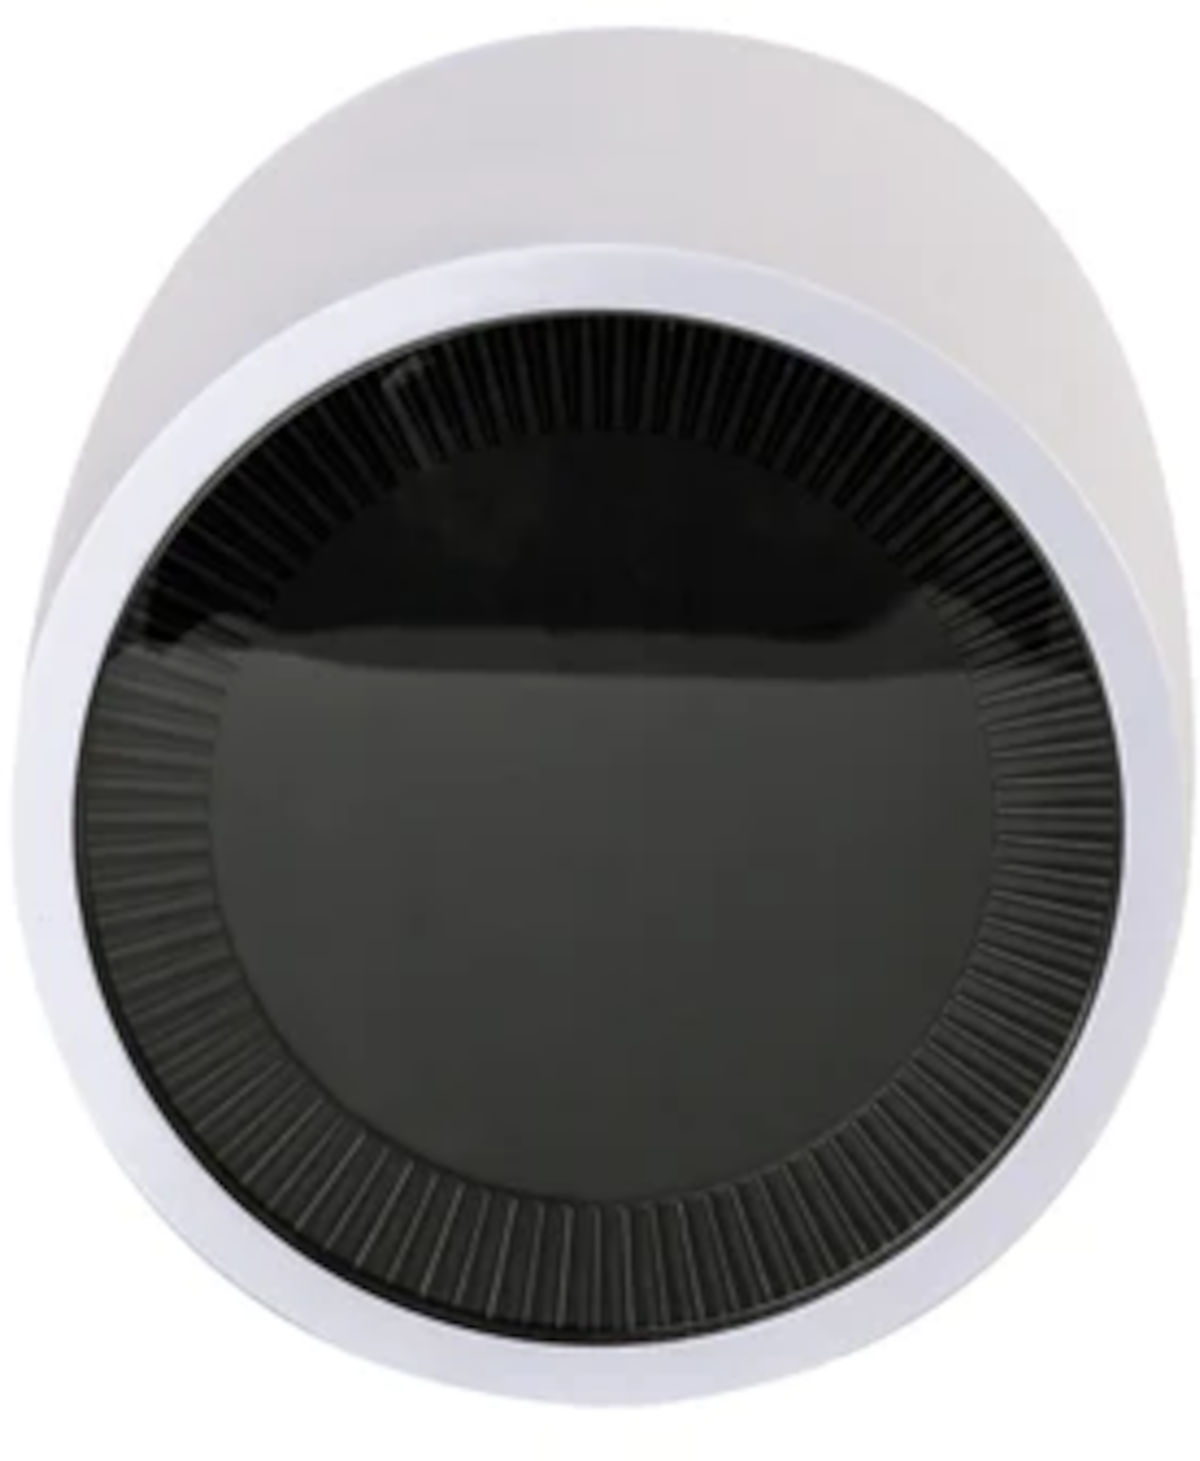 Wesmartify Smart Home Heizkörperthermostat Premium, Frontansicht, vor weißem Hintergrund